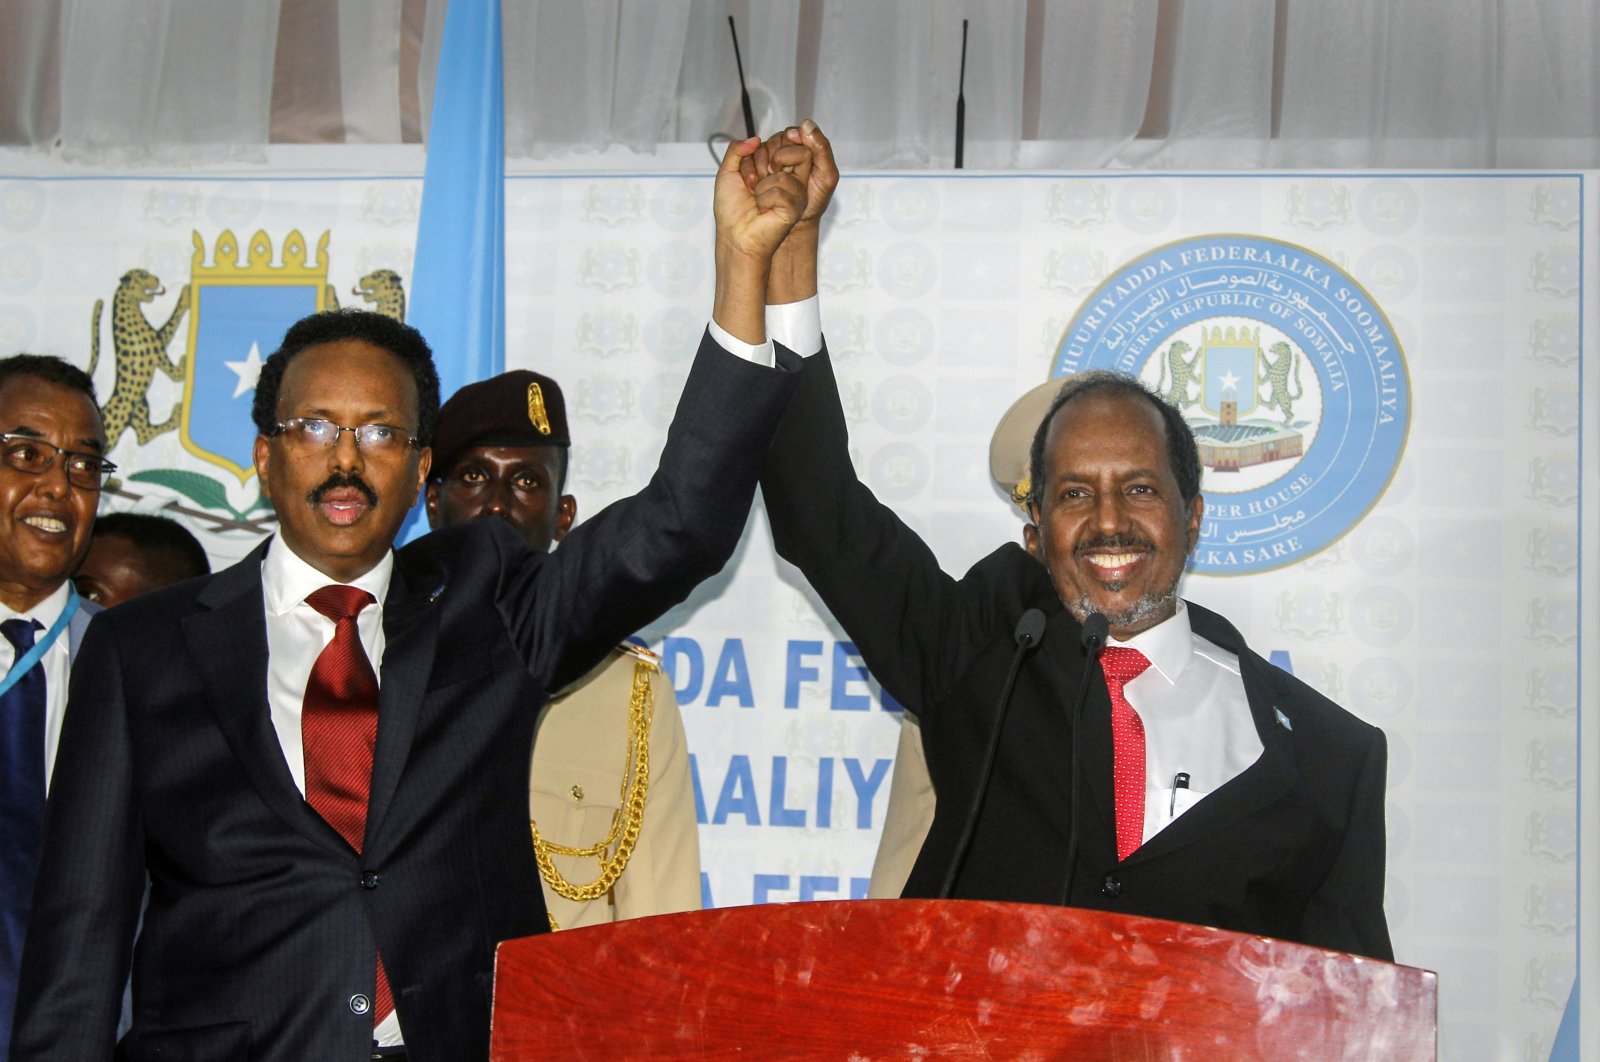 Mantan presiden Somalia Mohamud terpilih kembali sebagai kepala negara